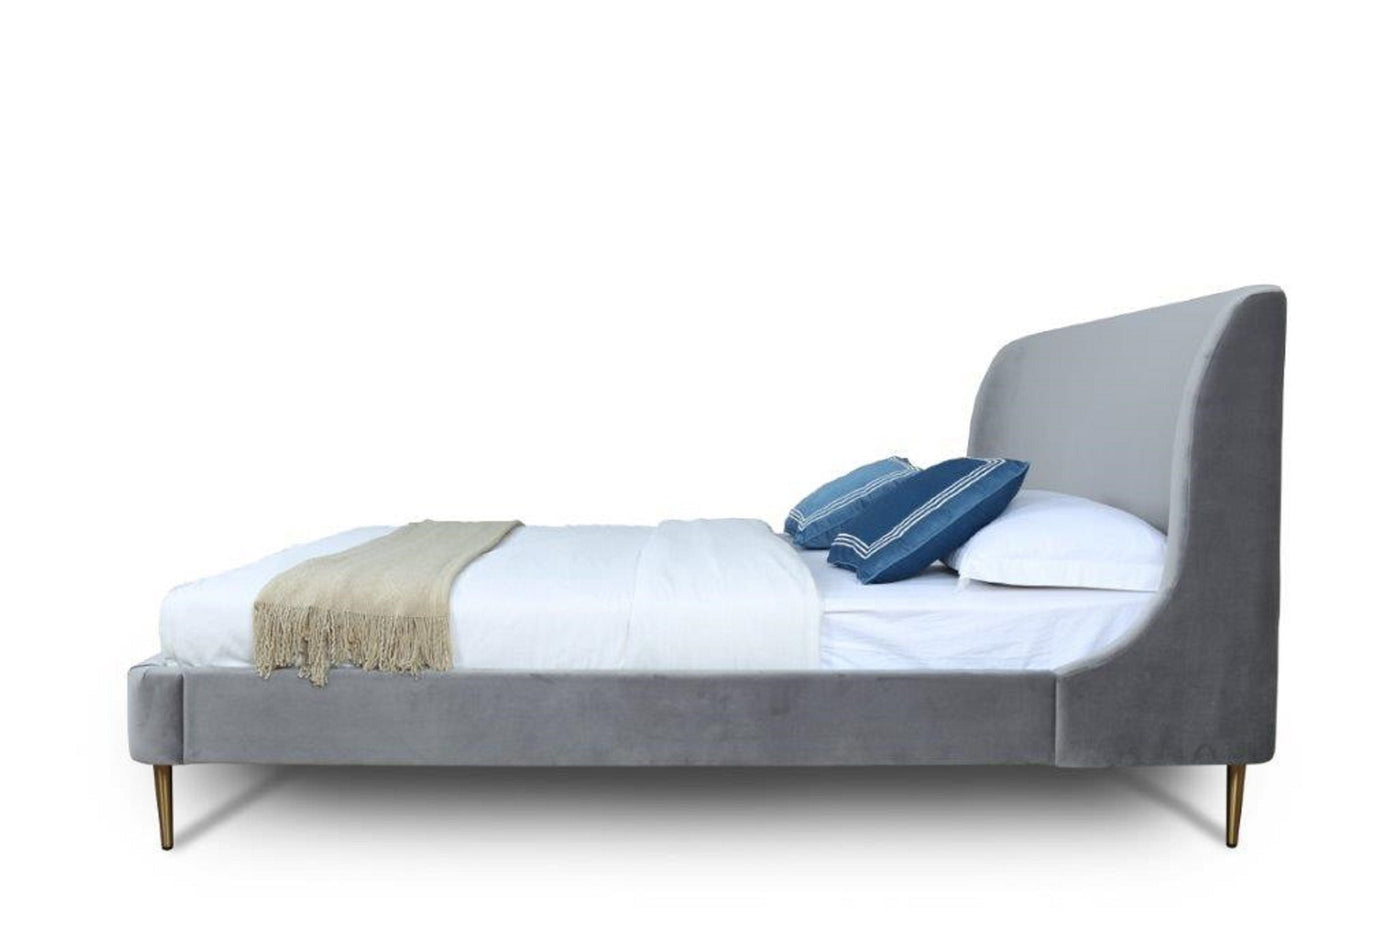 Stege Velvet Full Bed - Grey